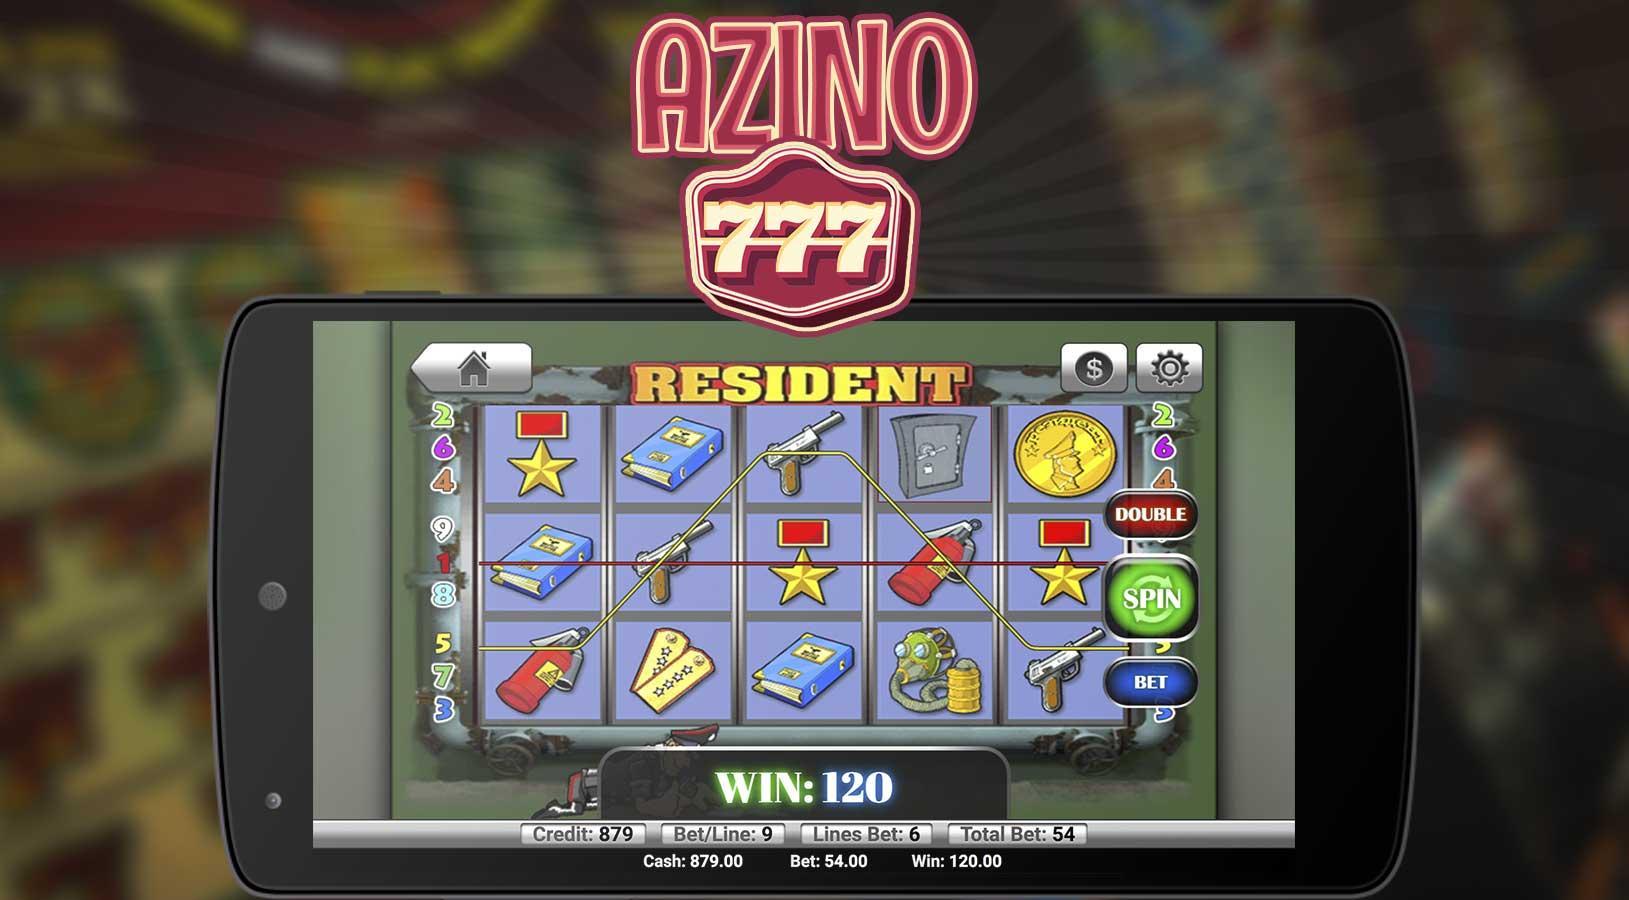 Новые игровые автоматы 777 playmax1. Игра в Азино 777 игра медвед во всю картинку название игры.